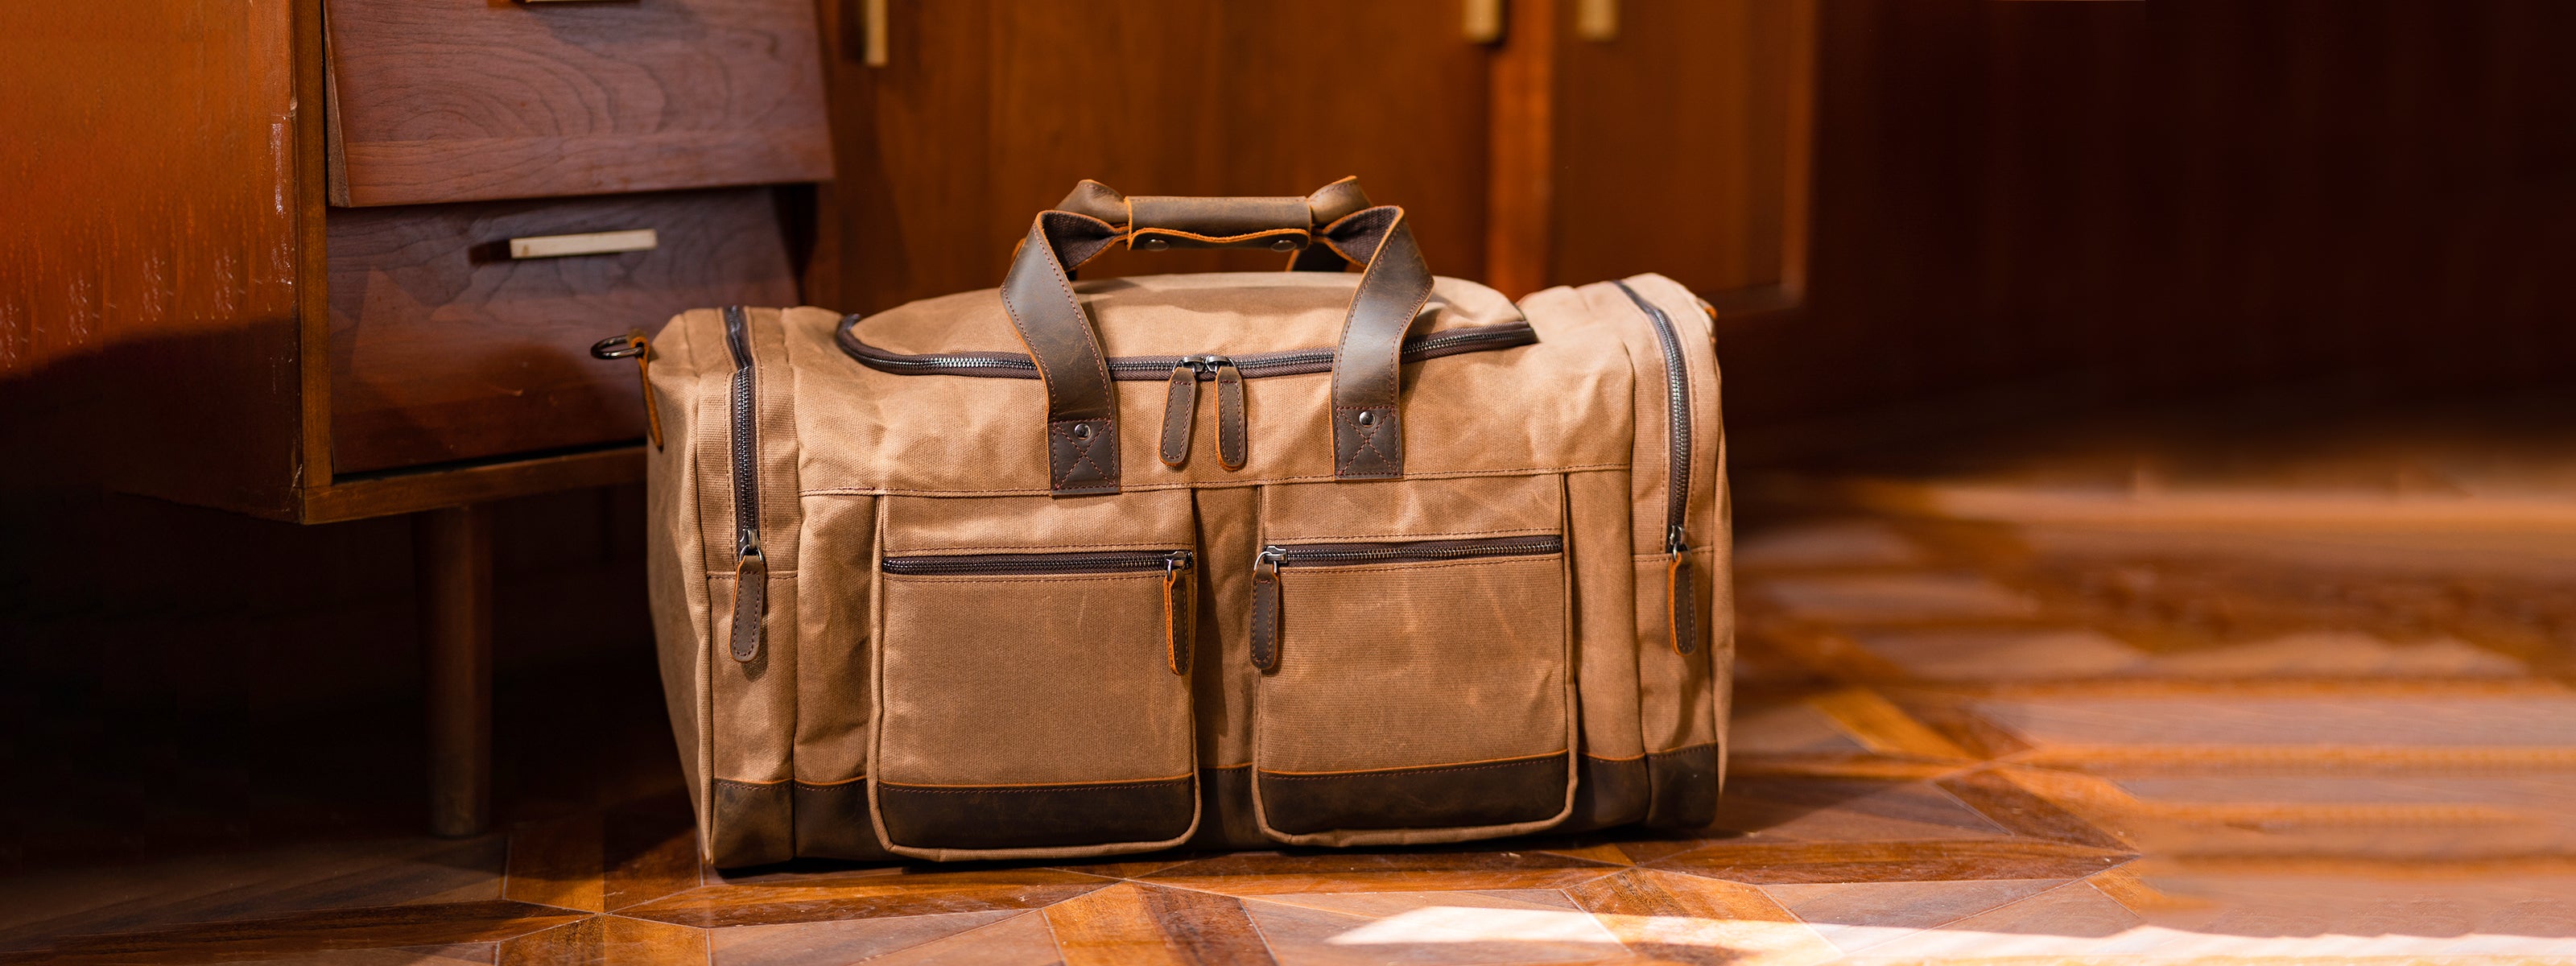 Shop Designer Luggage, Vintage Travel Bags Online